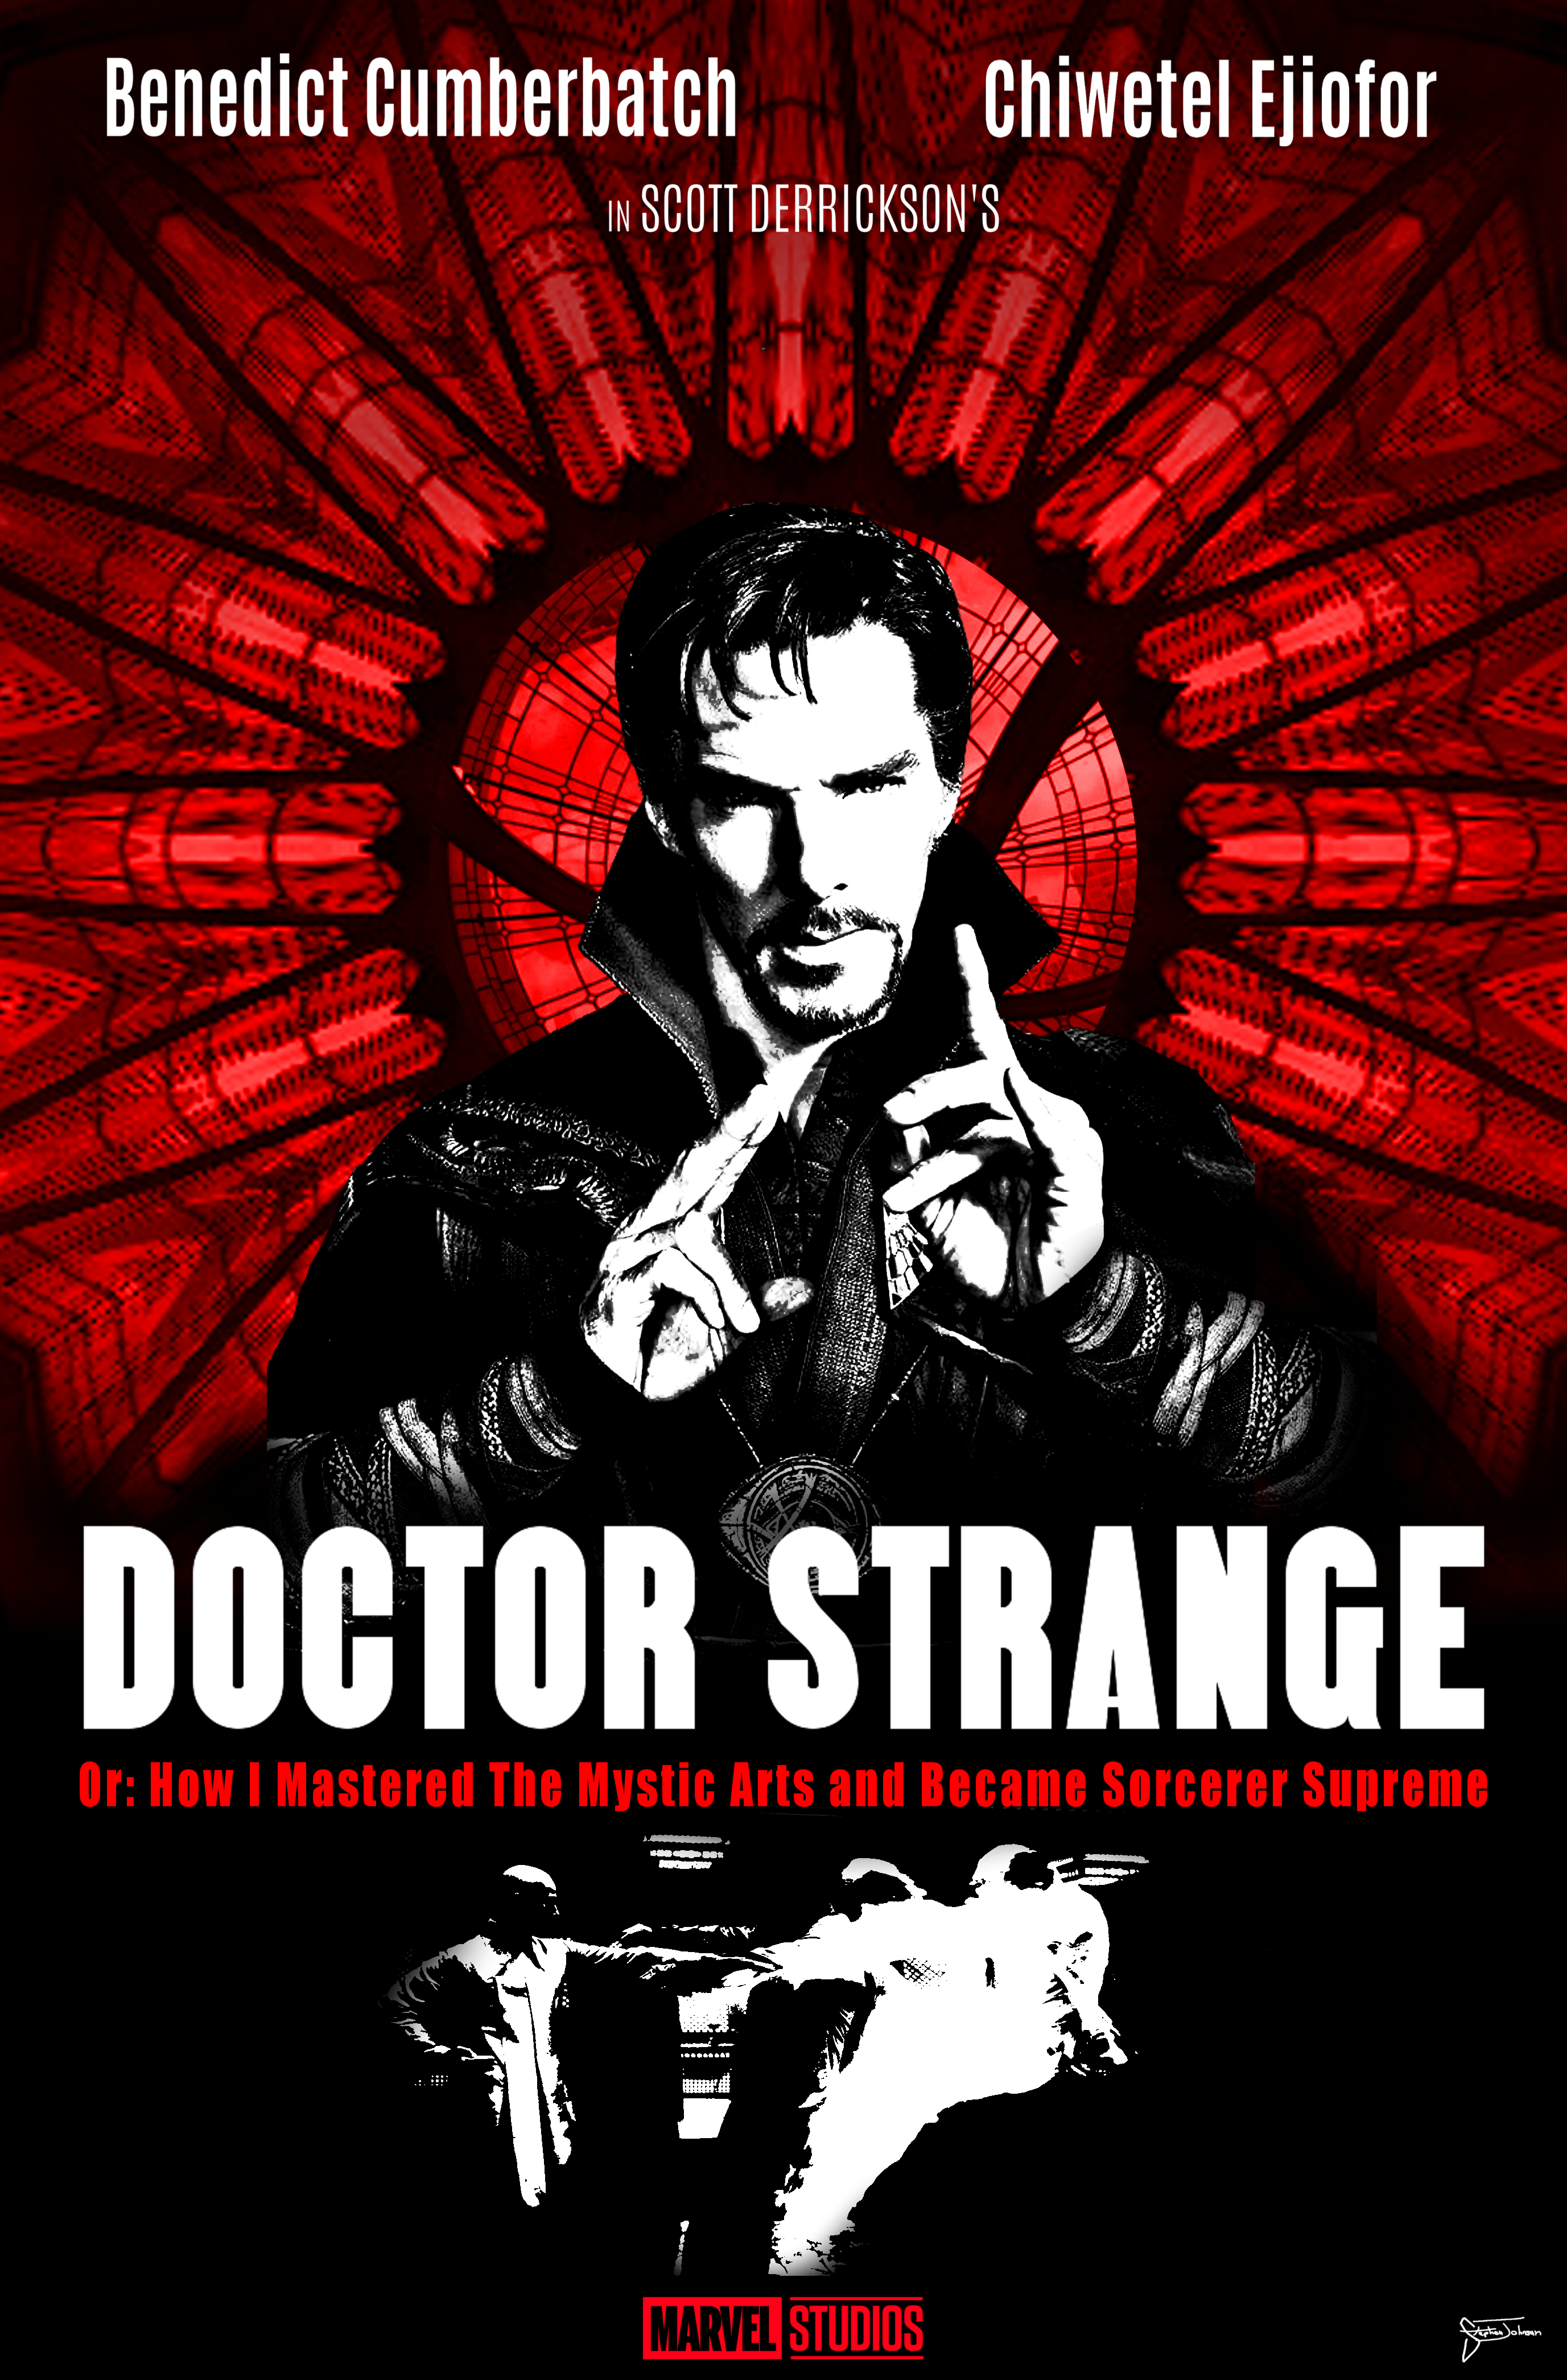 dr strangelove wallpaper,poster,movie,album cover,font,advertising